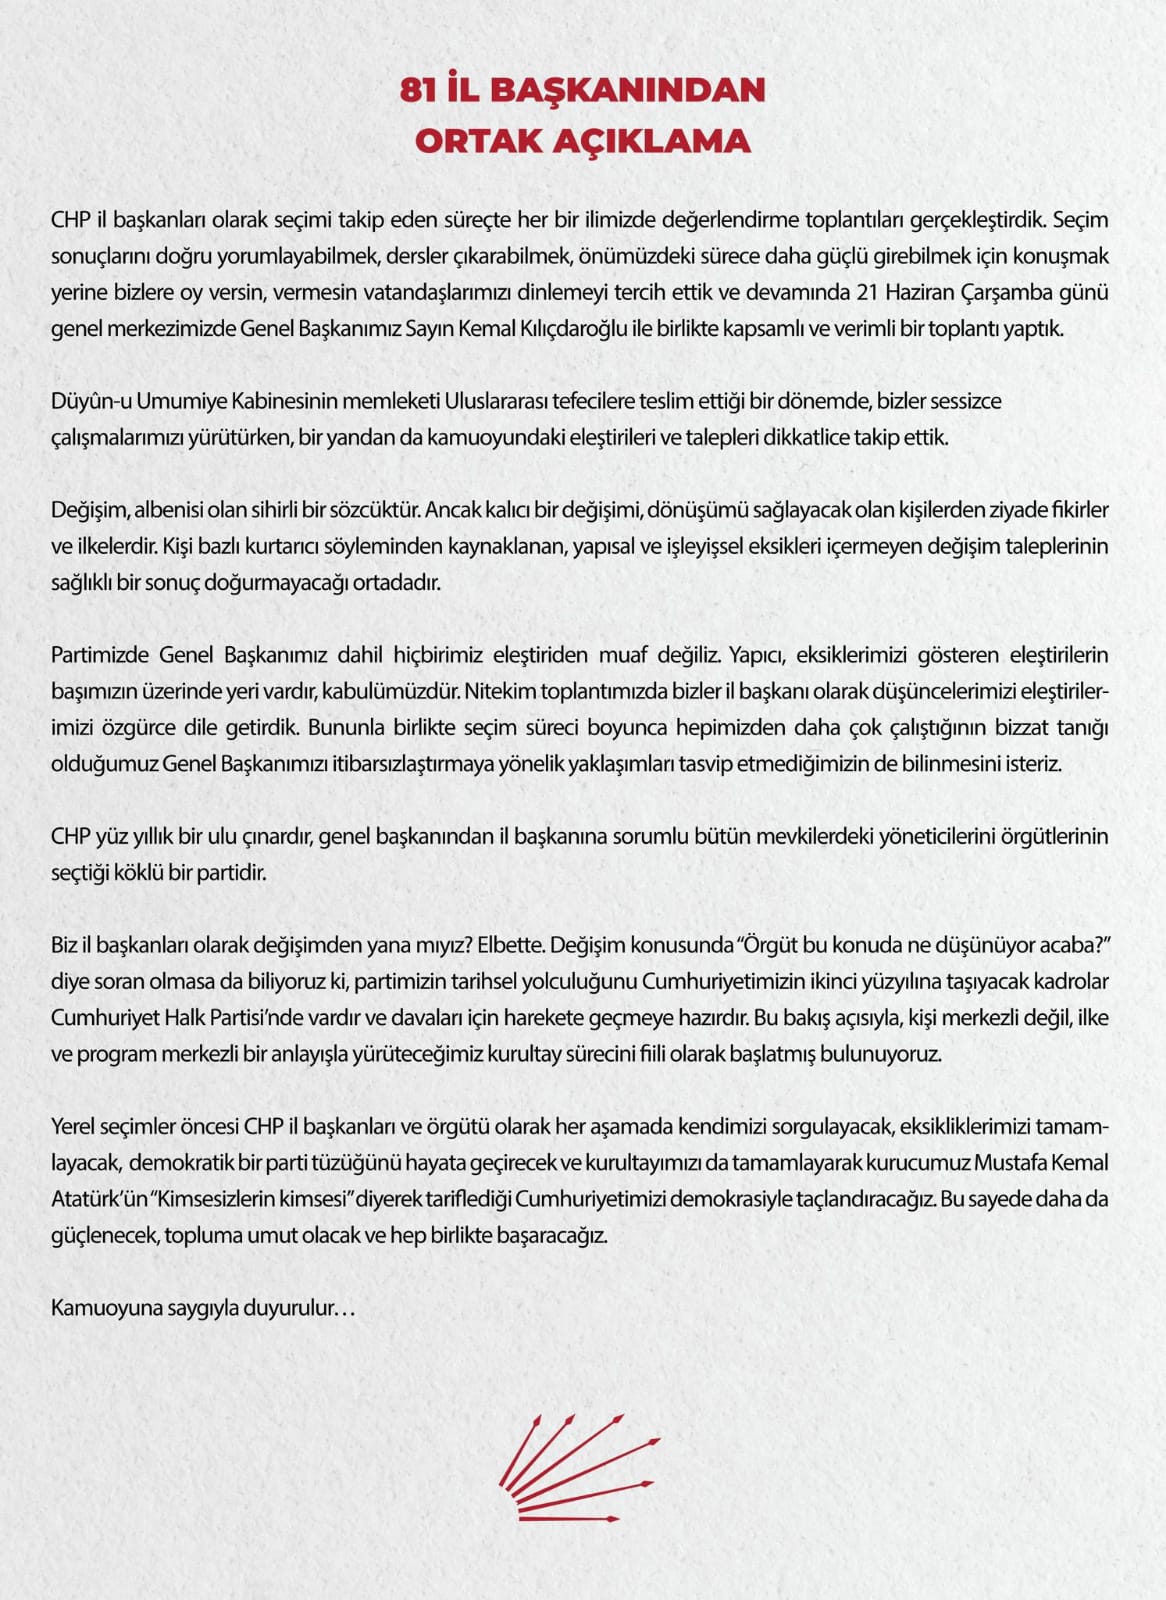 CHP İzmir'in siyasetinde ayrışma başladı!